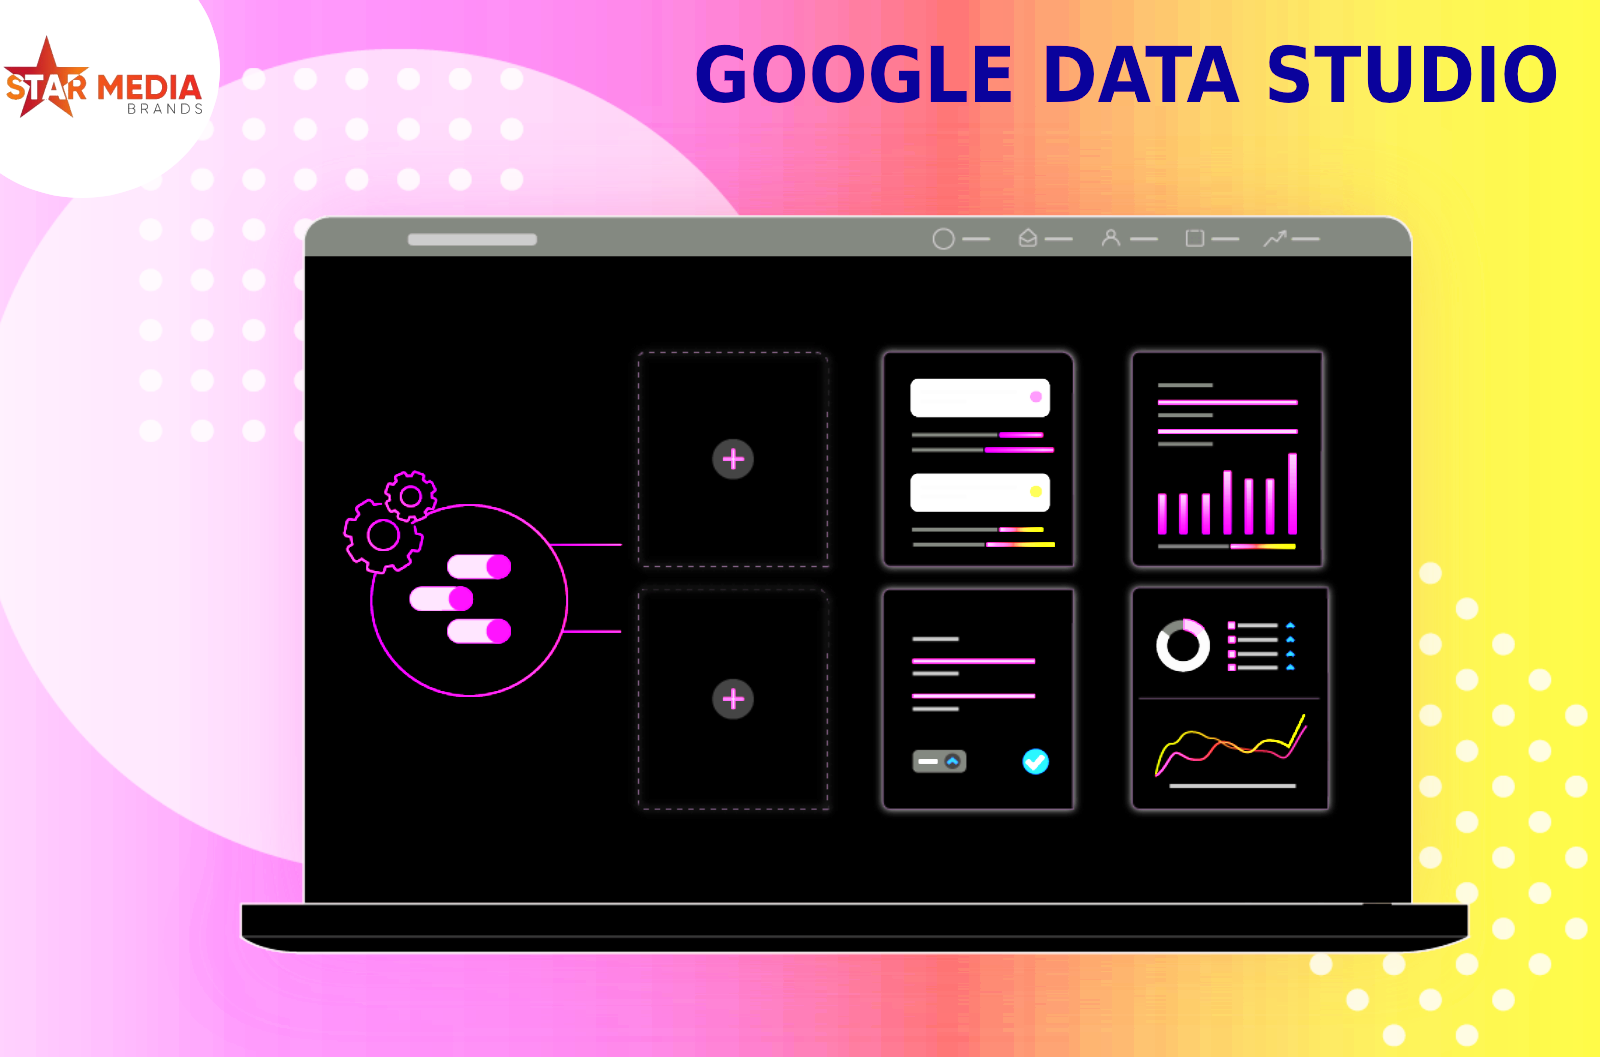 Google Data Studio Information for Beginners